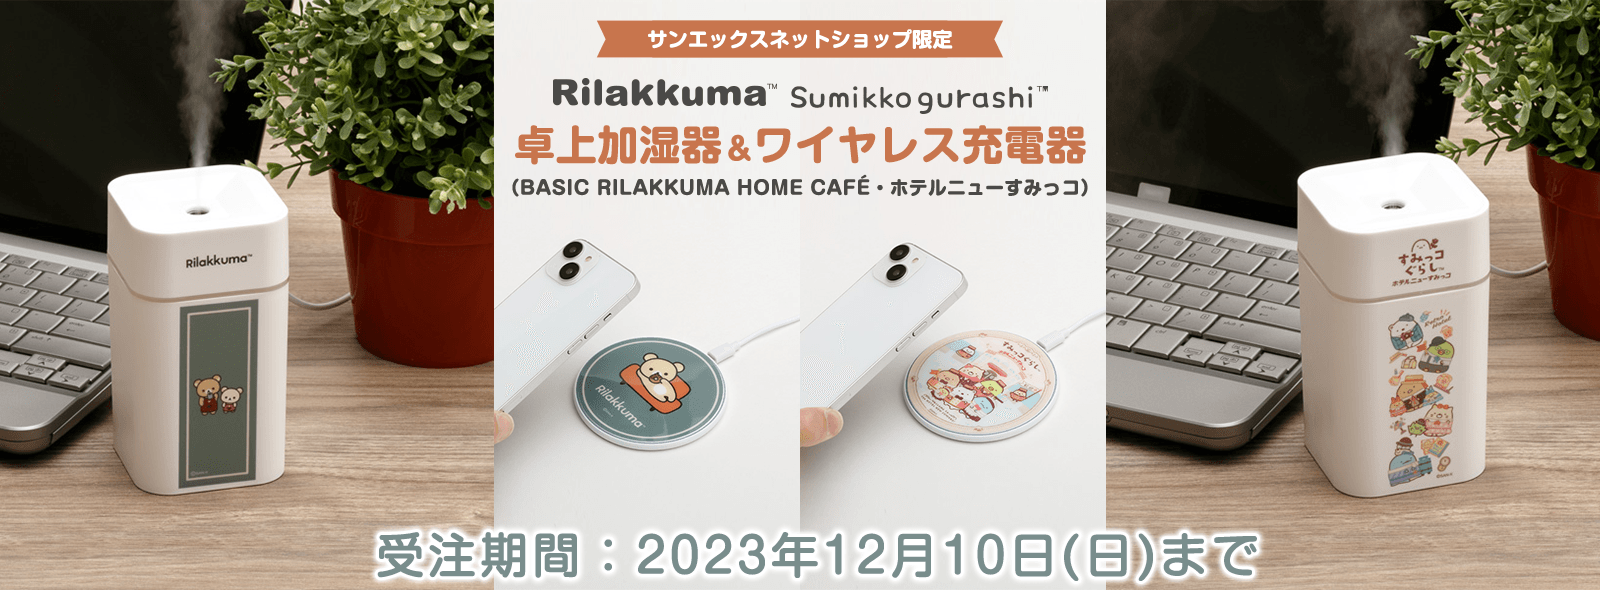 【限定】リラックマ・すみっコぐらし 卓上加湿器&ワイヤレス充電器（BASIC RILAKKUMA HOME CAFE・ホテルニューすみっコ）